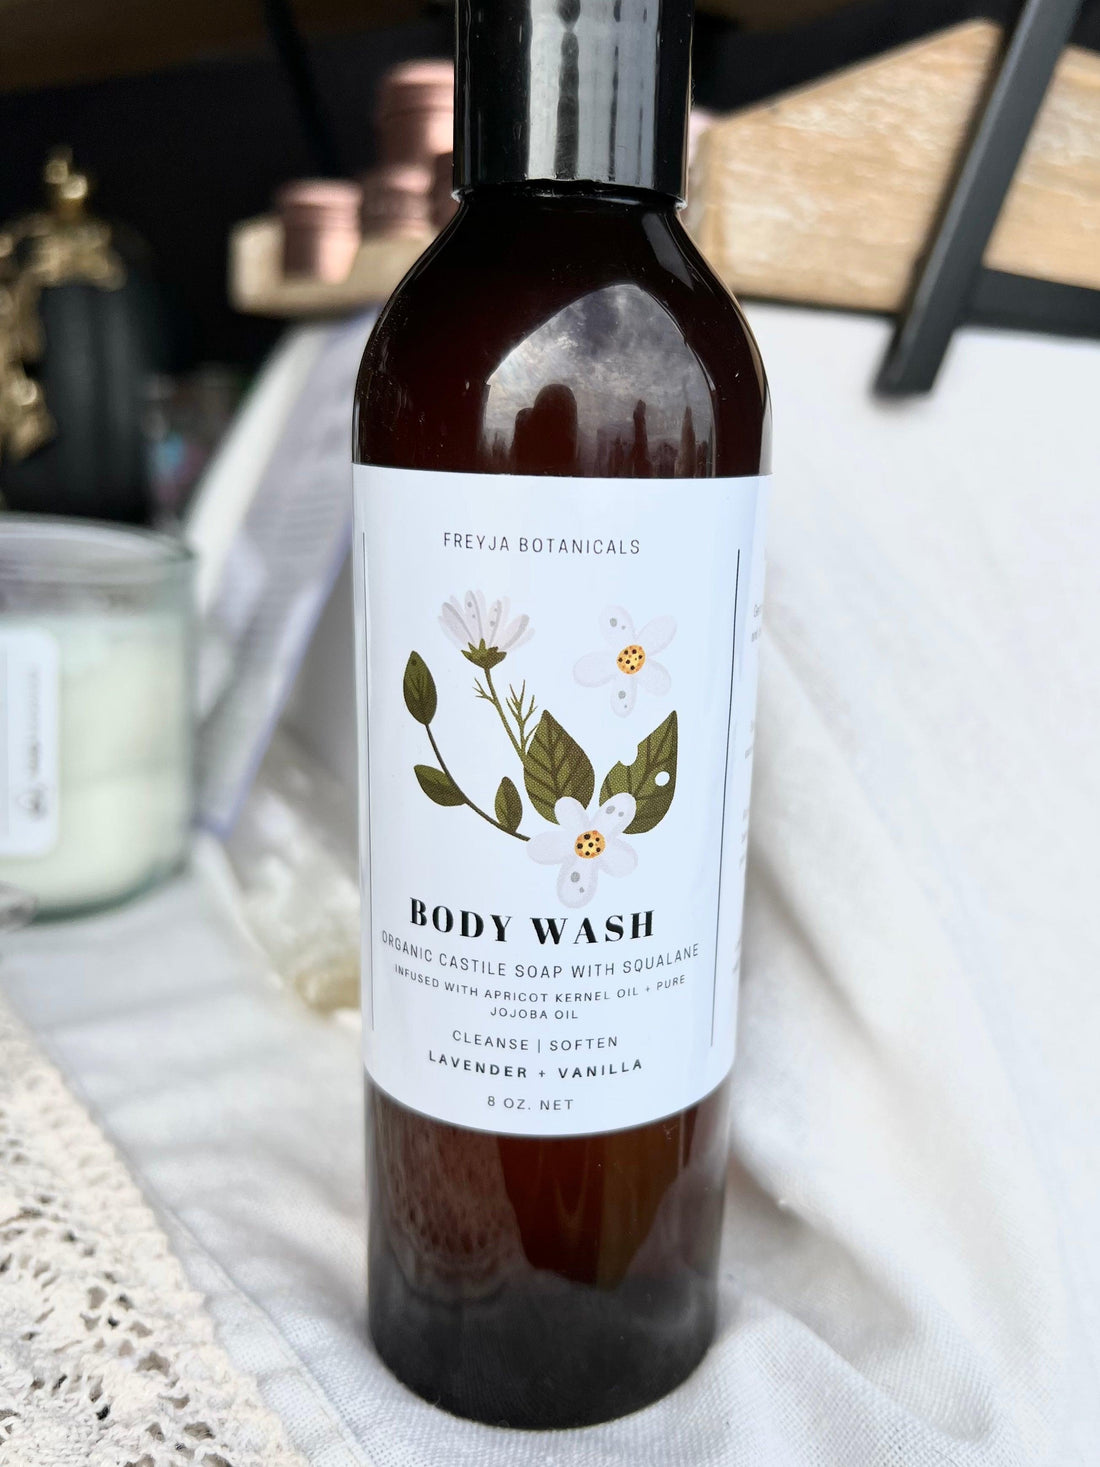 Lavender & Vanilla Body Wash | Organic Castile Soap with Squalane